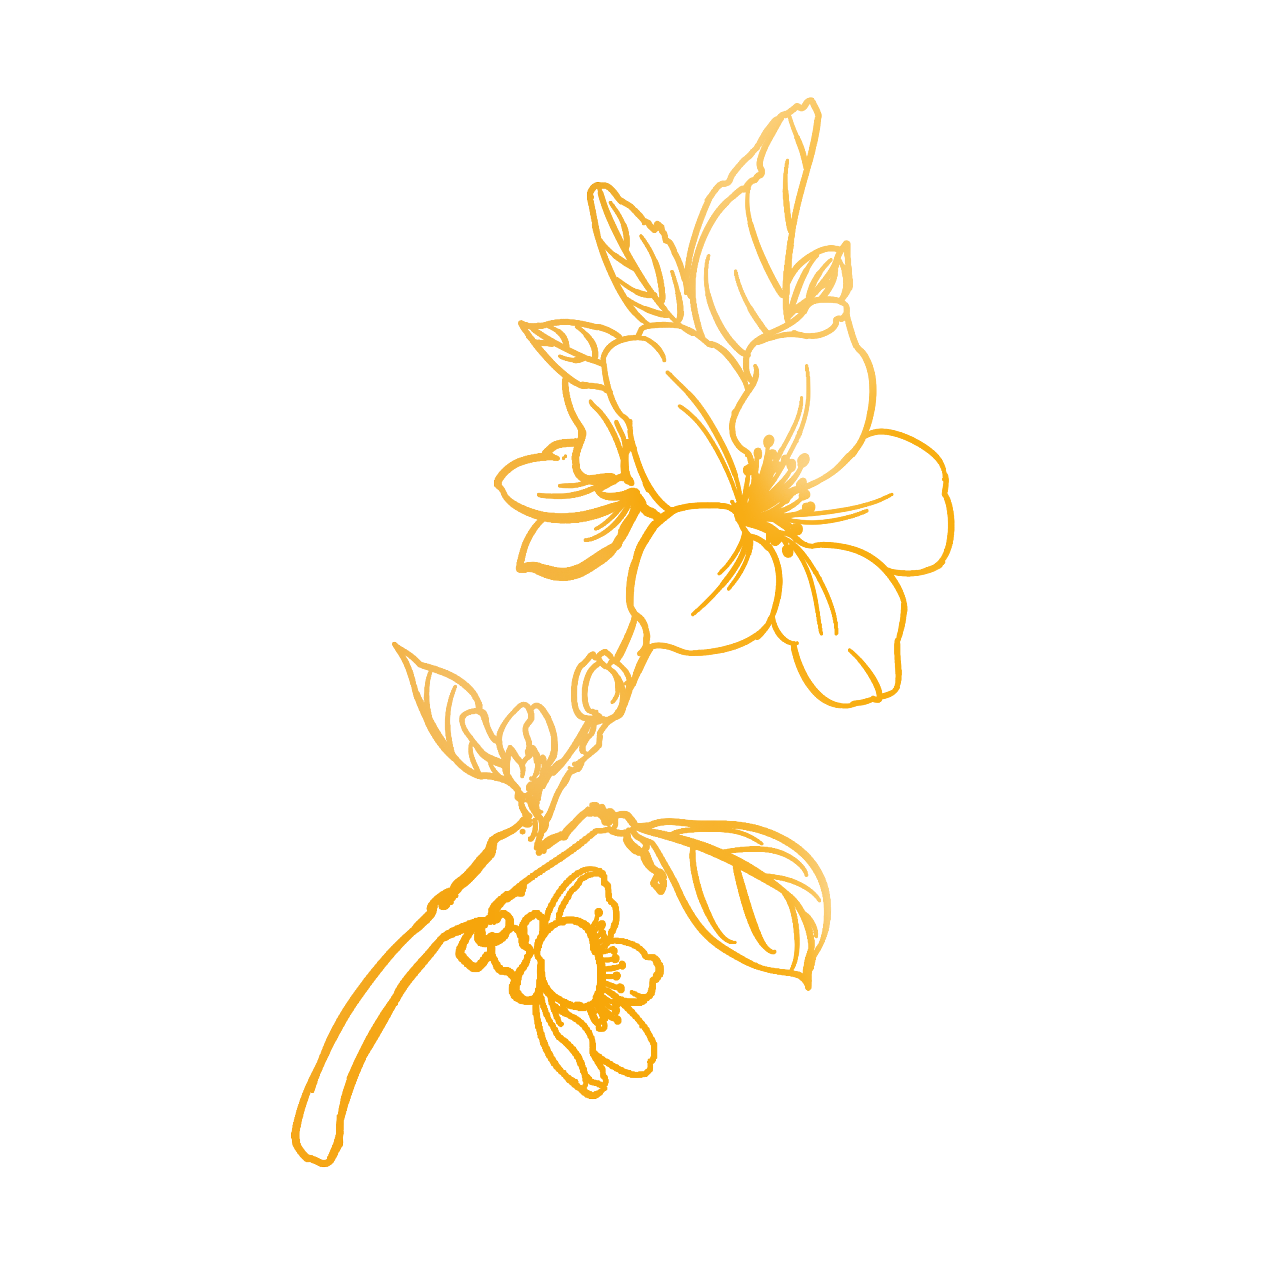 手绘装饰重阳菊花元素图片素材免费下载 - 觅知网